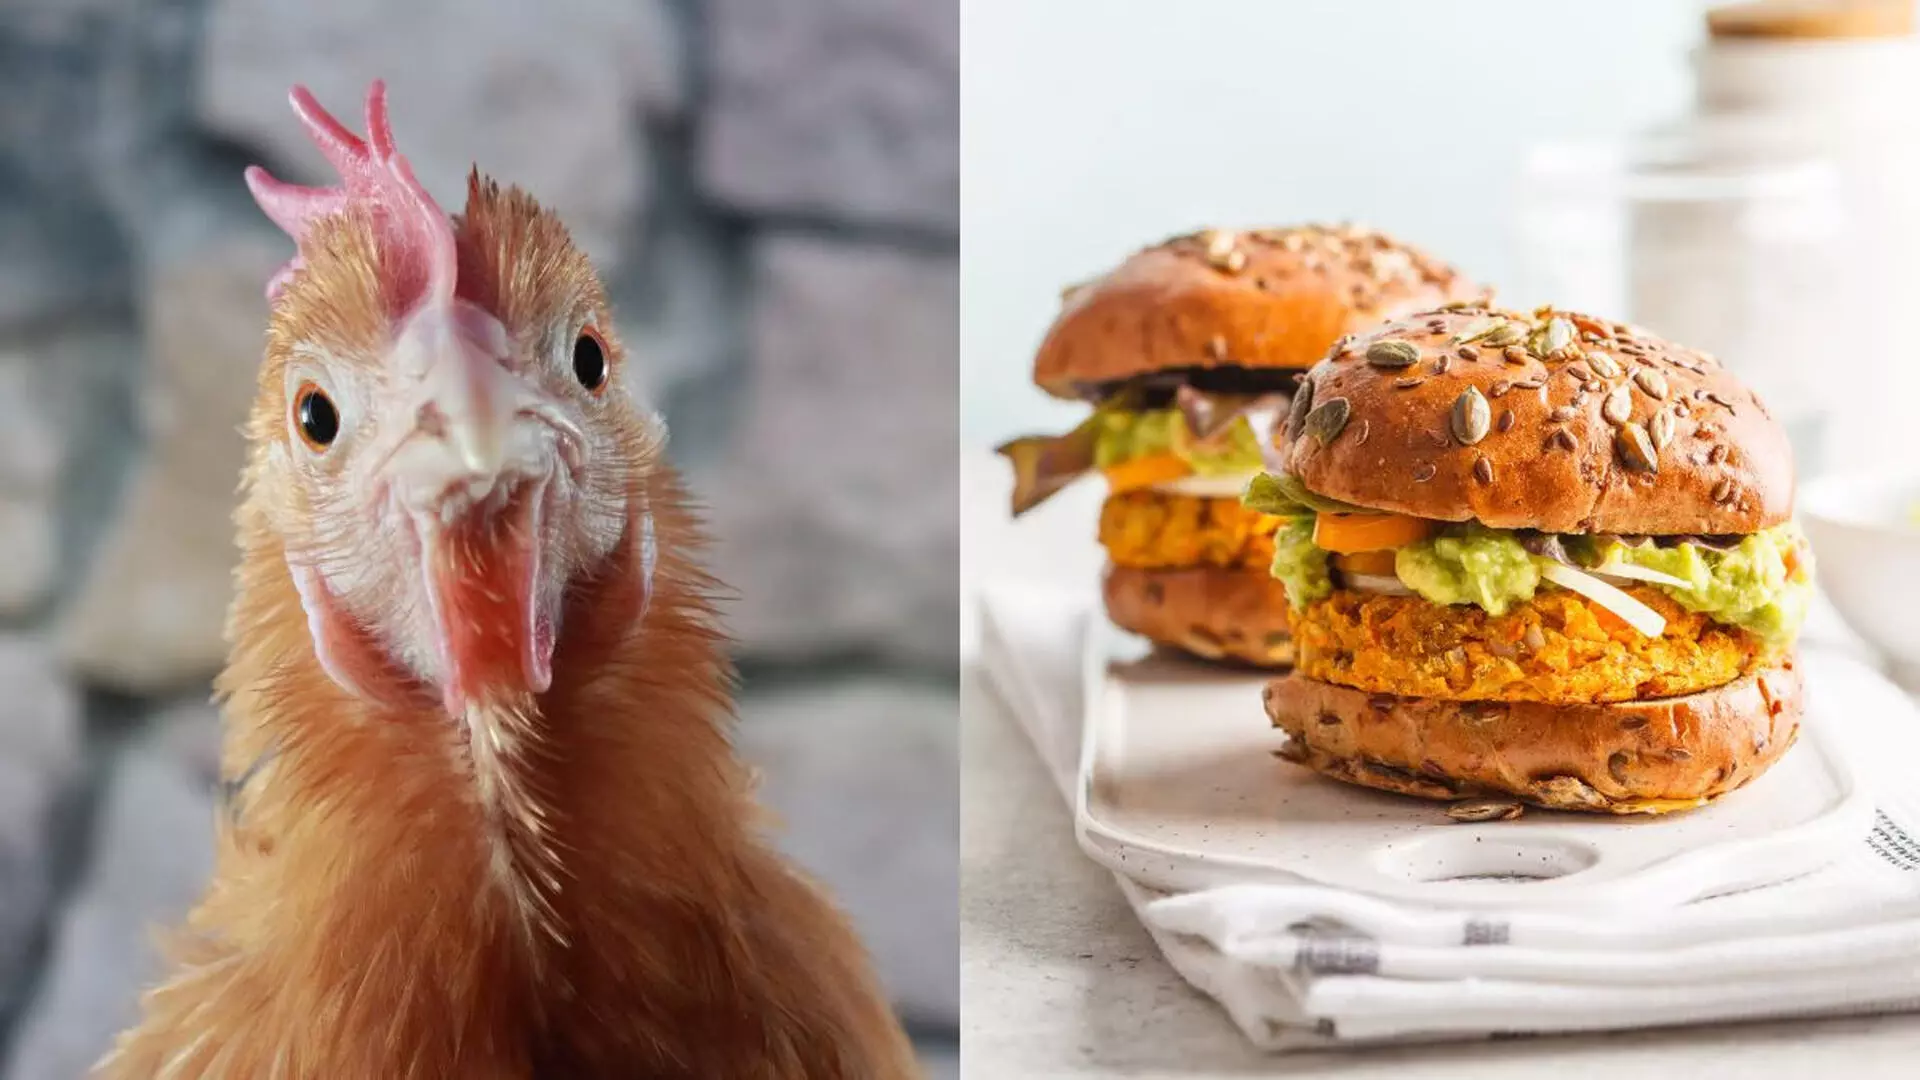 वेज बर्गर ऑर्डर करने वाले ग्राहकों को कैफे ने परोसा चिकन, खाद्य विभाग तक पहुंचा मामला